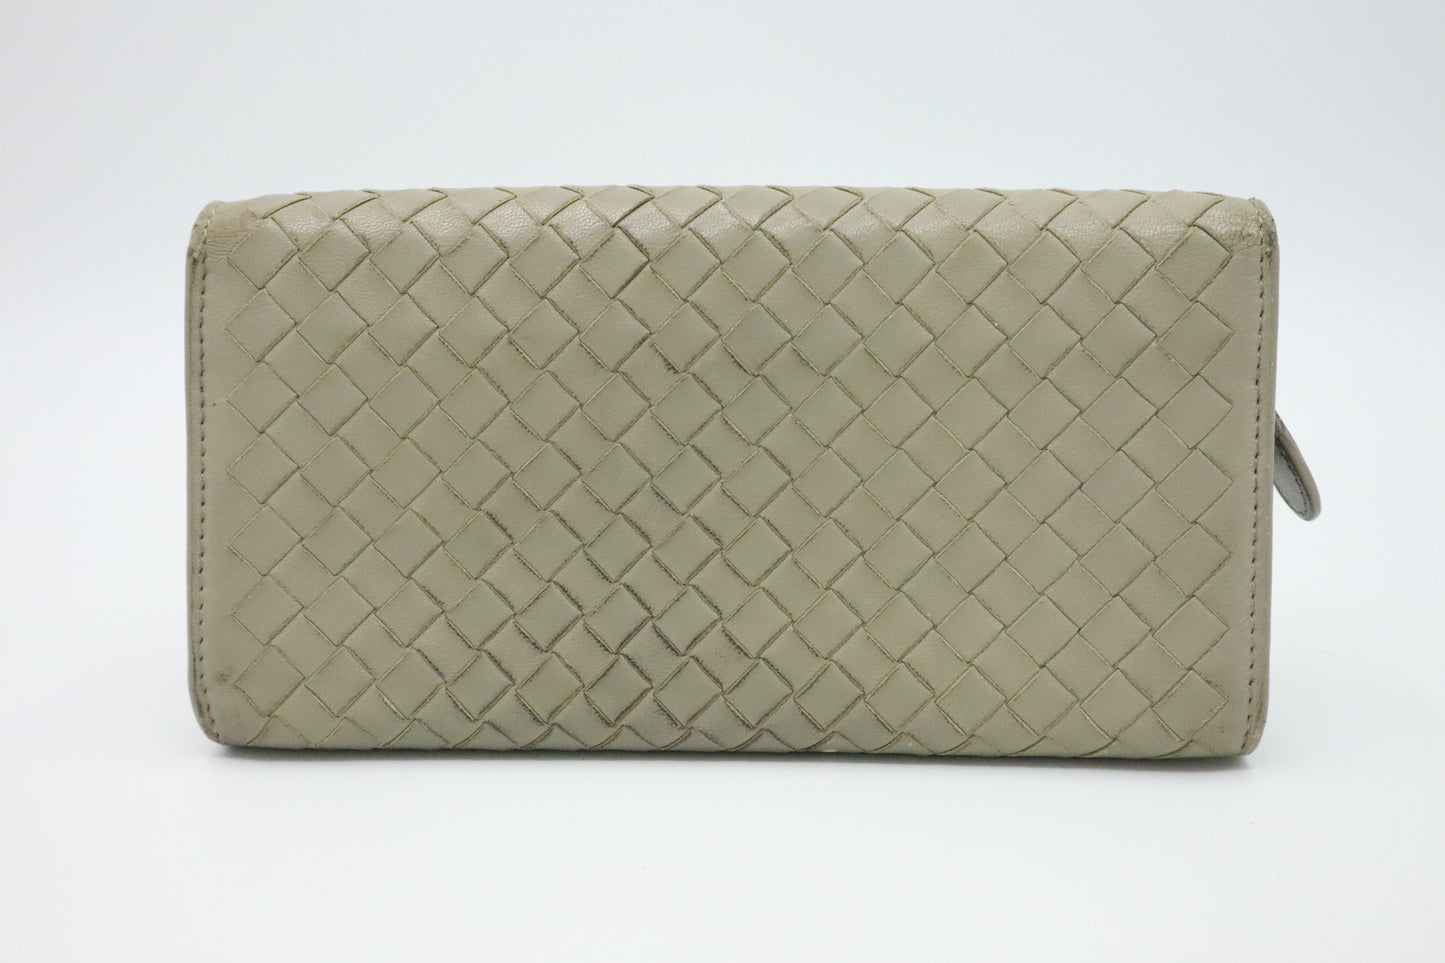 Bottega Long Wallet in Grey Intrecciato Leather